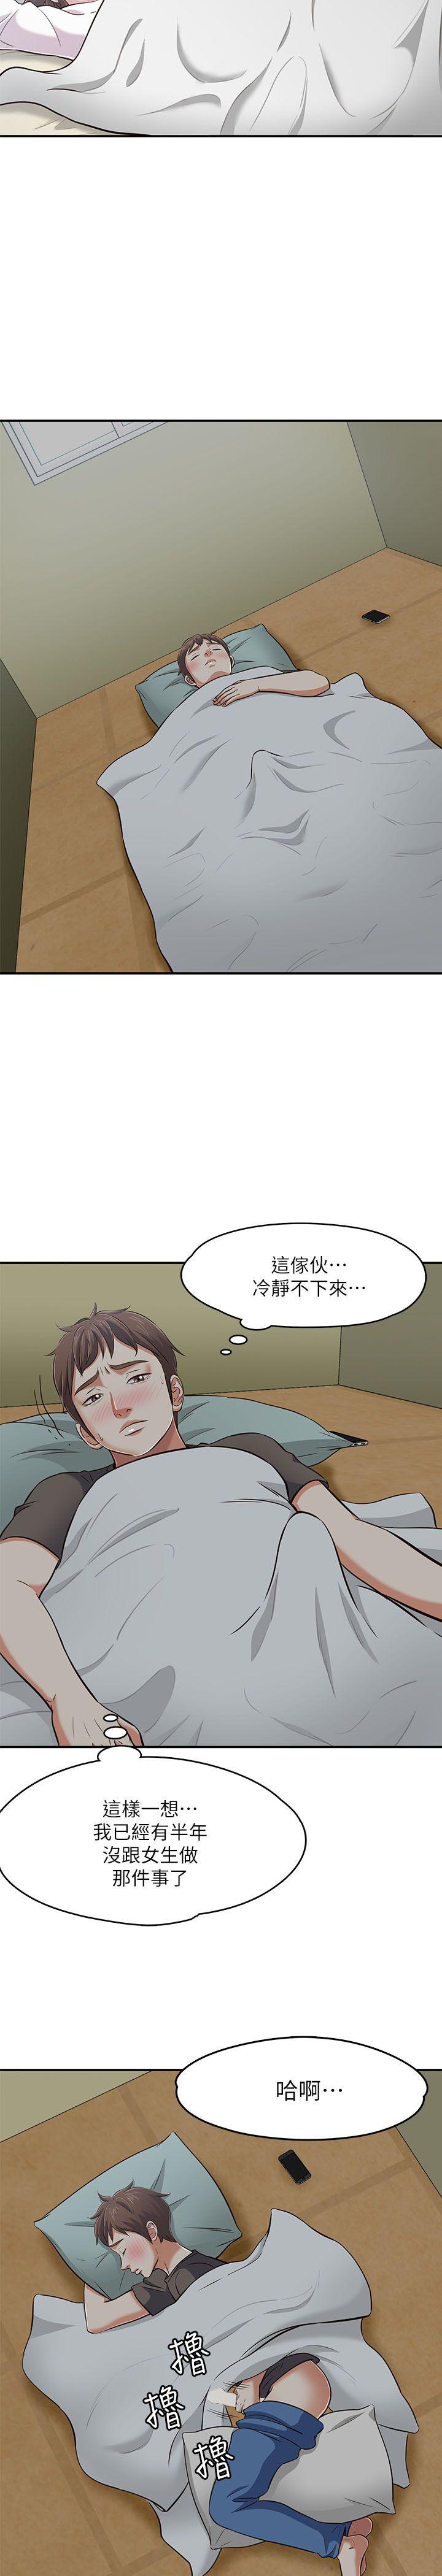 韩国污漫画 Roommate 第64话 7